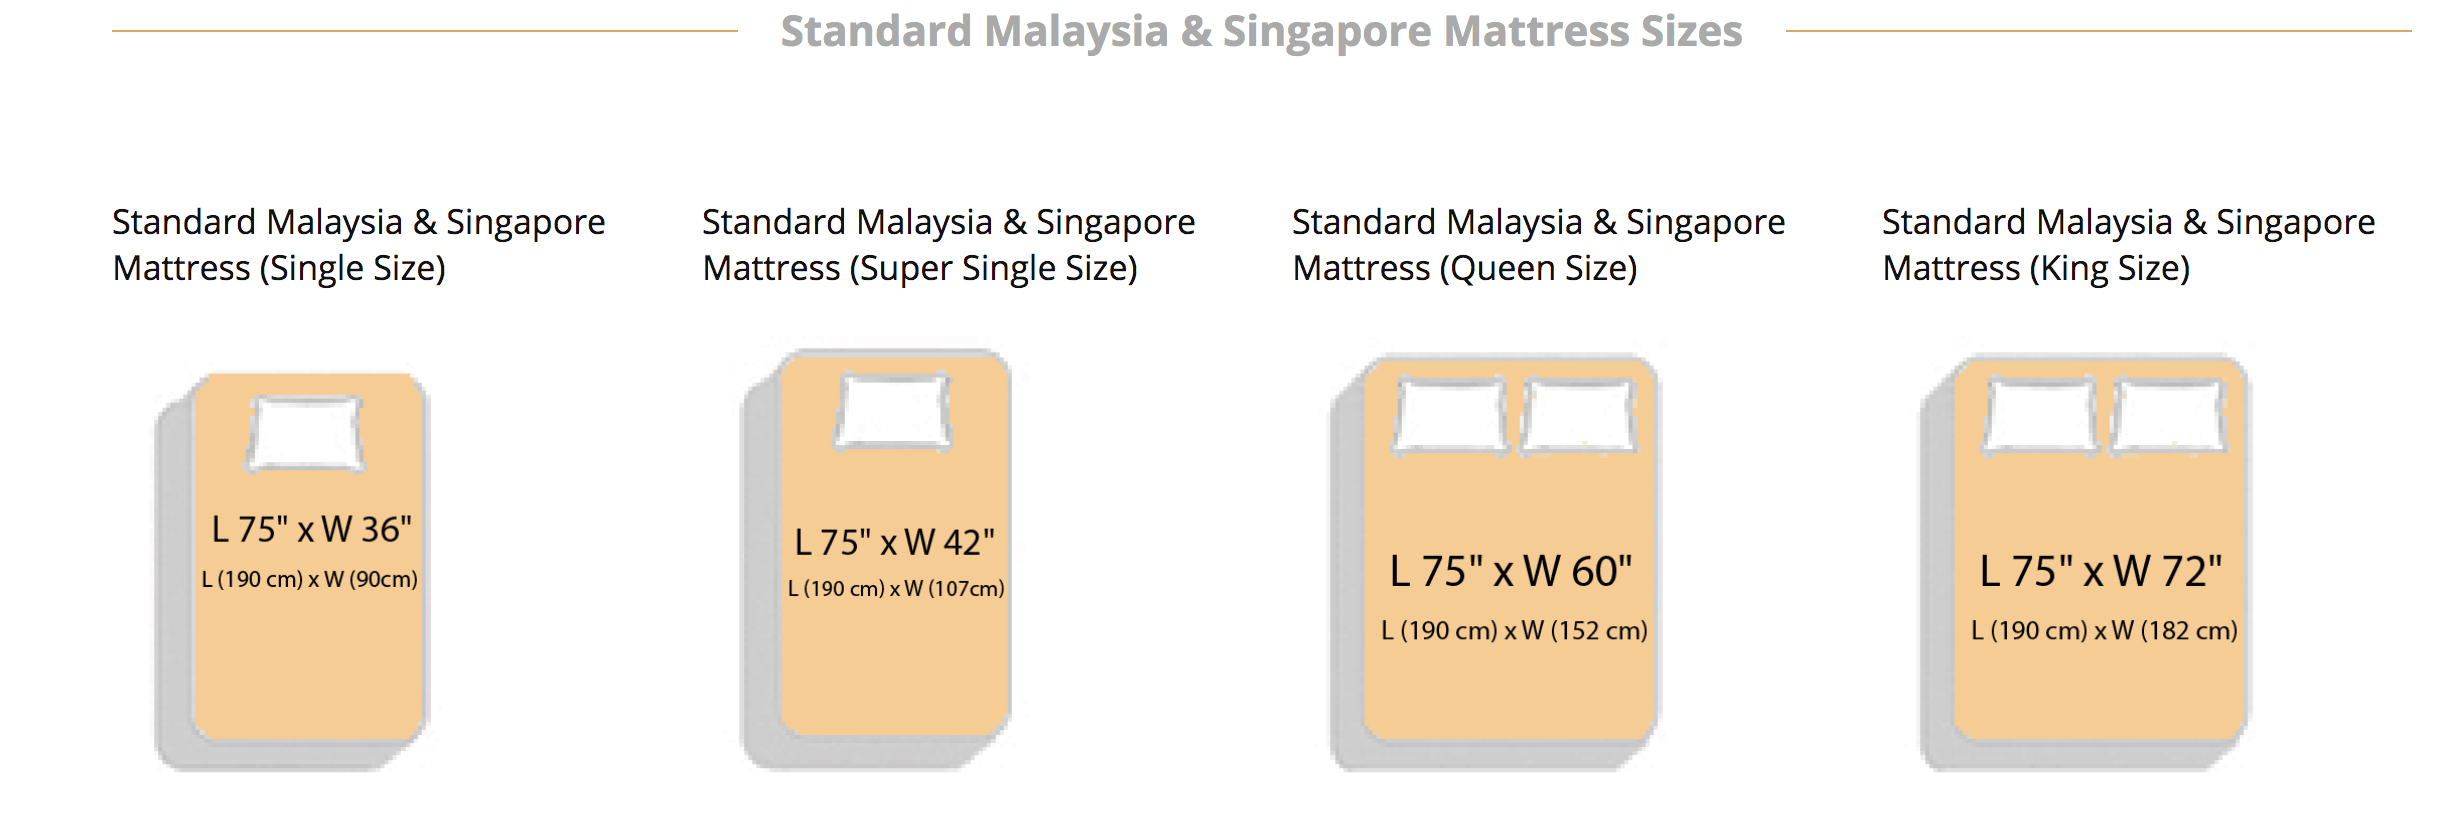 standard mattress sizes malaysia